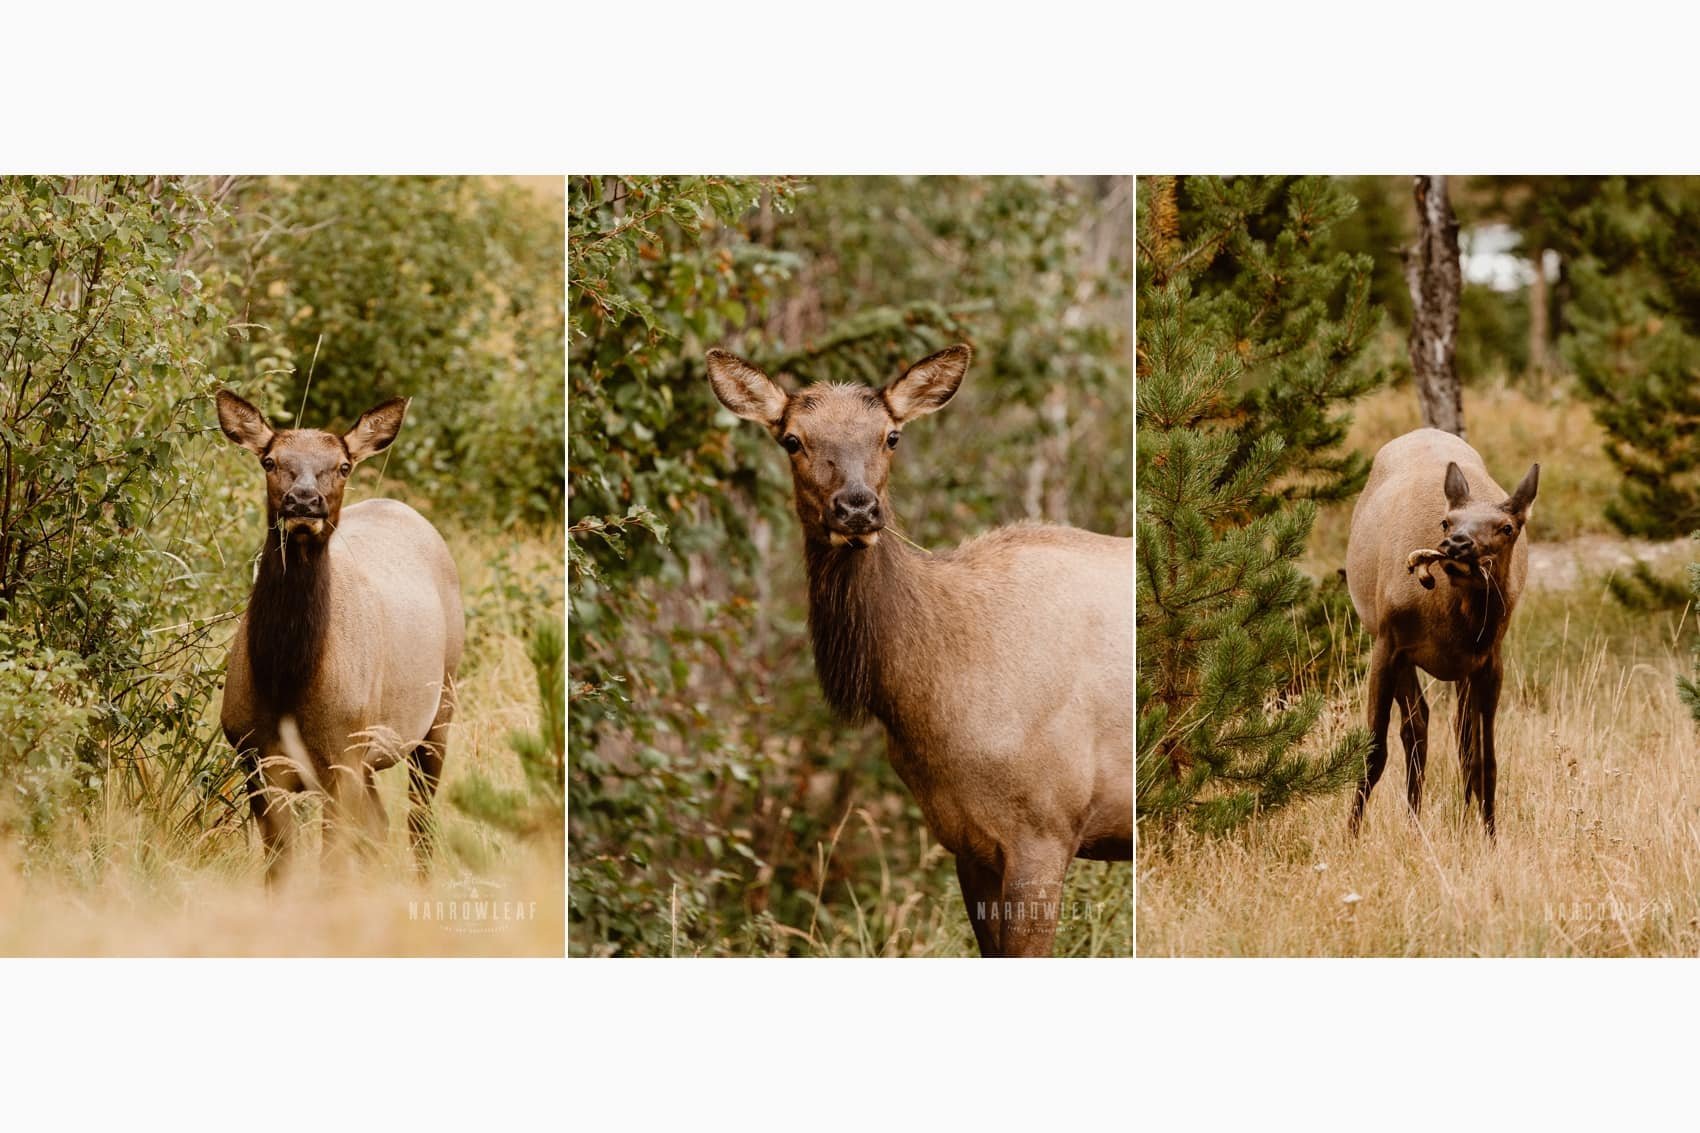 Colorado-elk-eating-narrowleaf-love-and-adventure-photography.jpg.jpg